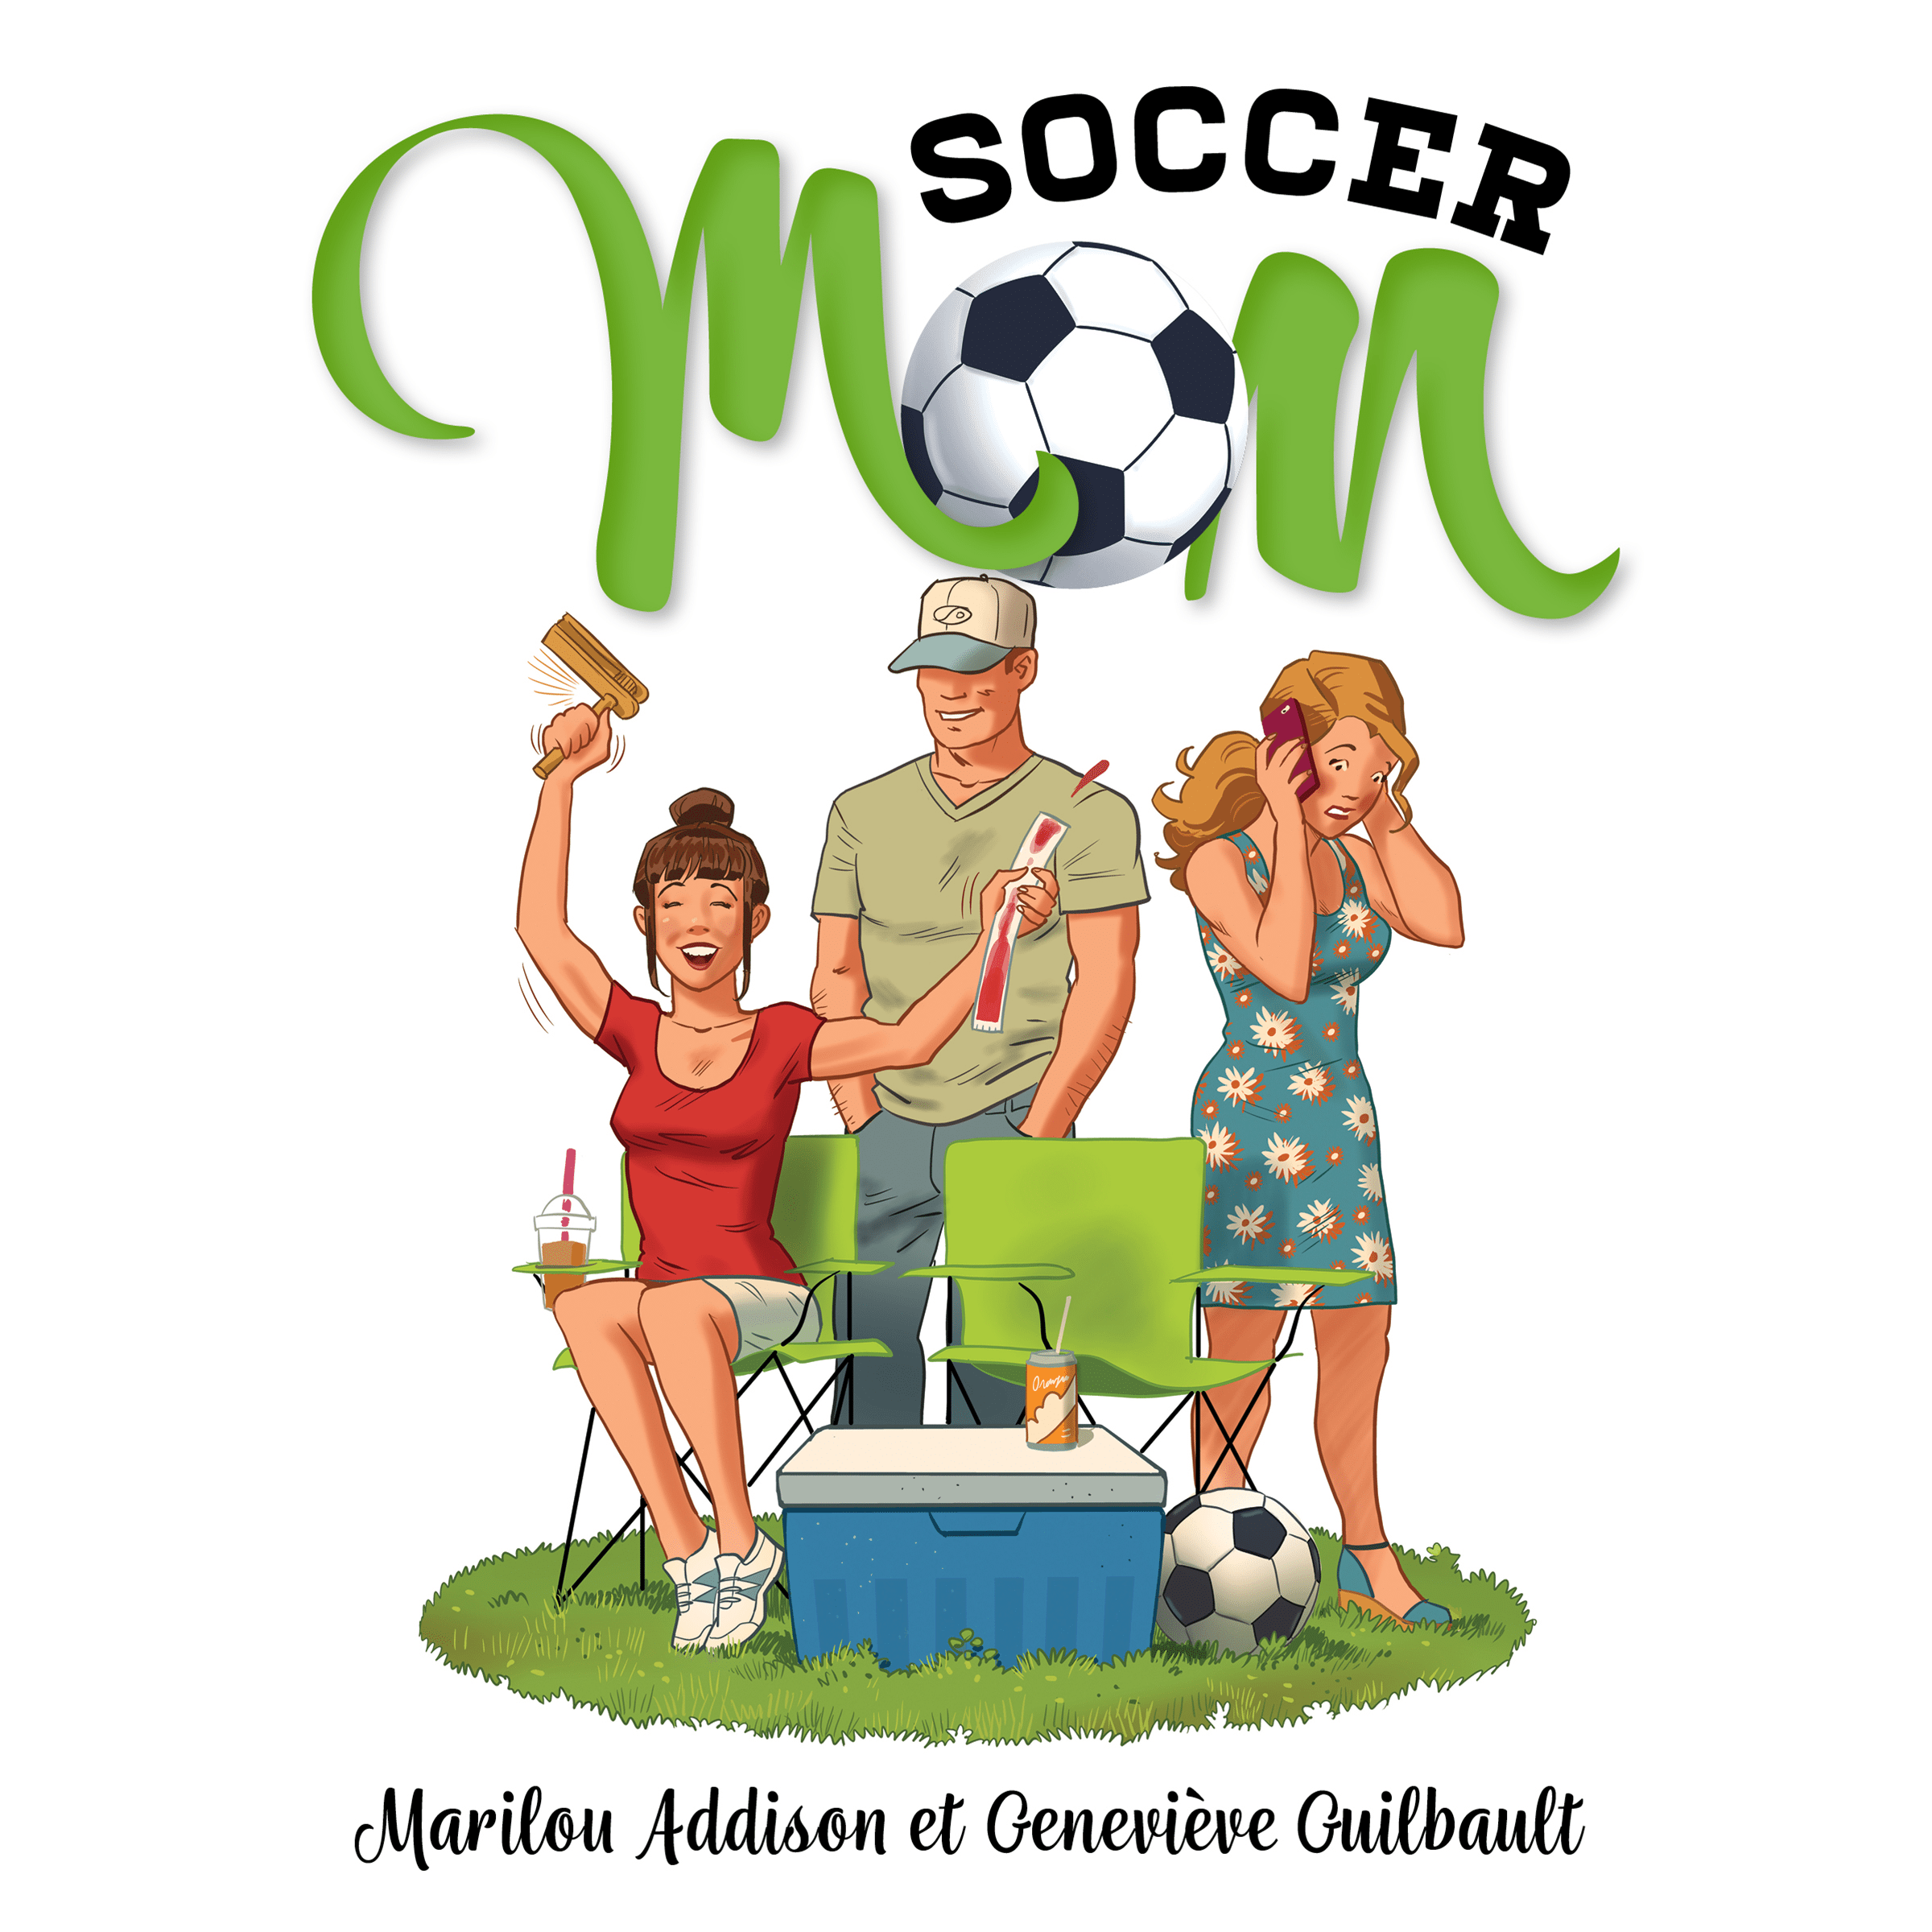 Couverture du livre audio Soccer mom De Marilou Addison  et Geneviève Guilbault 